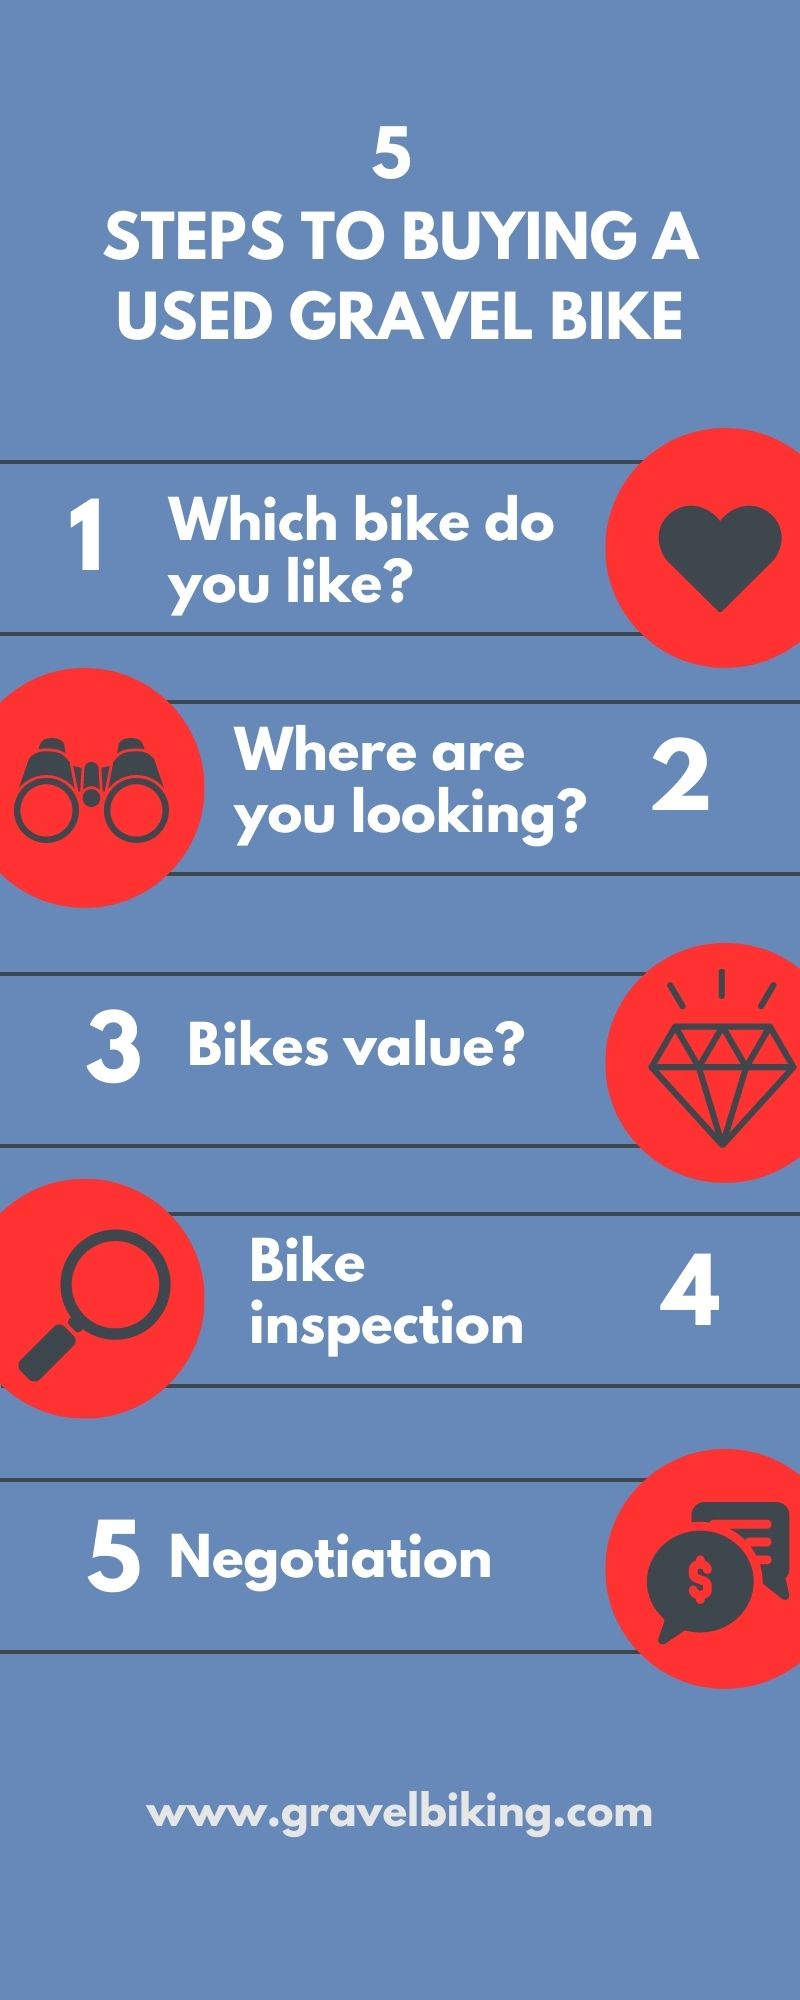 How to Buy a Used Gravel Bike | Gravel Biking